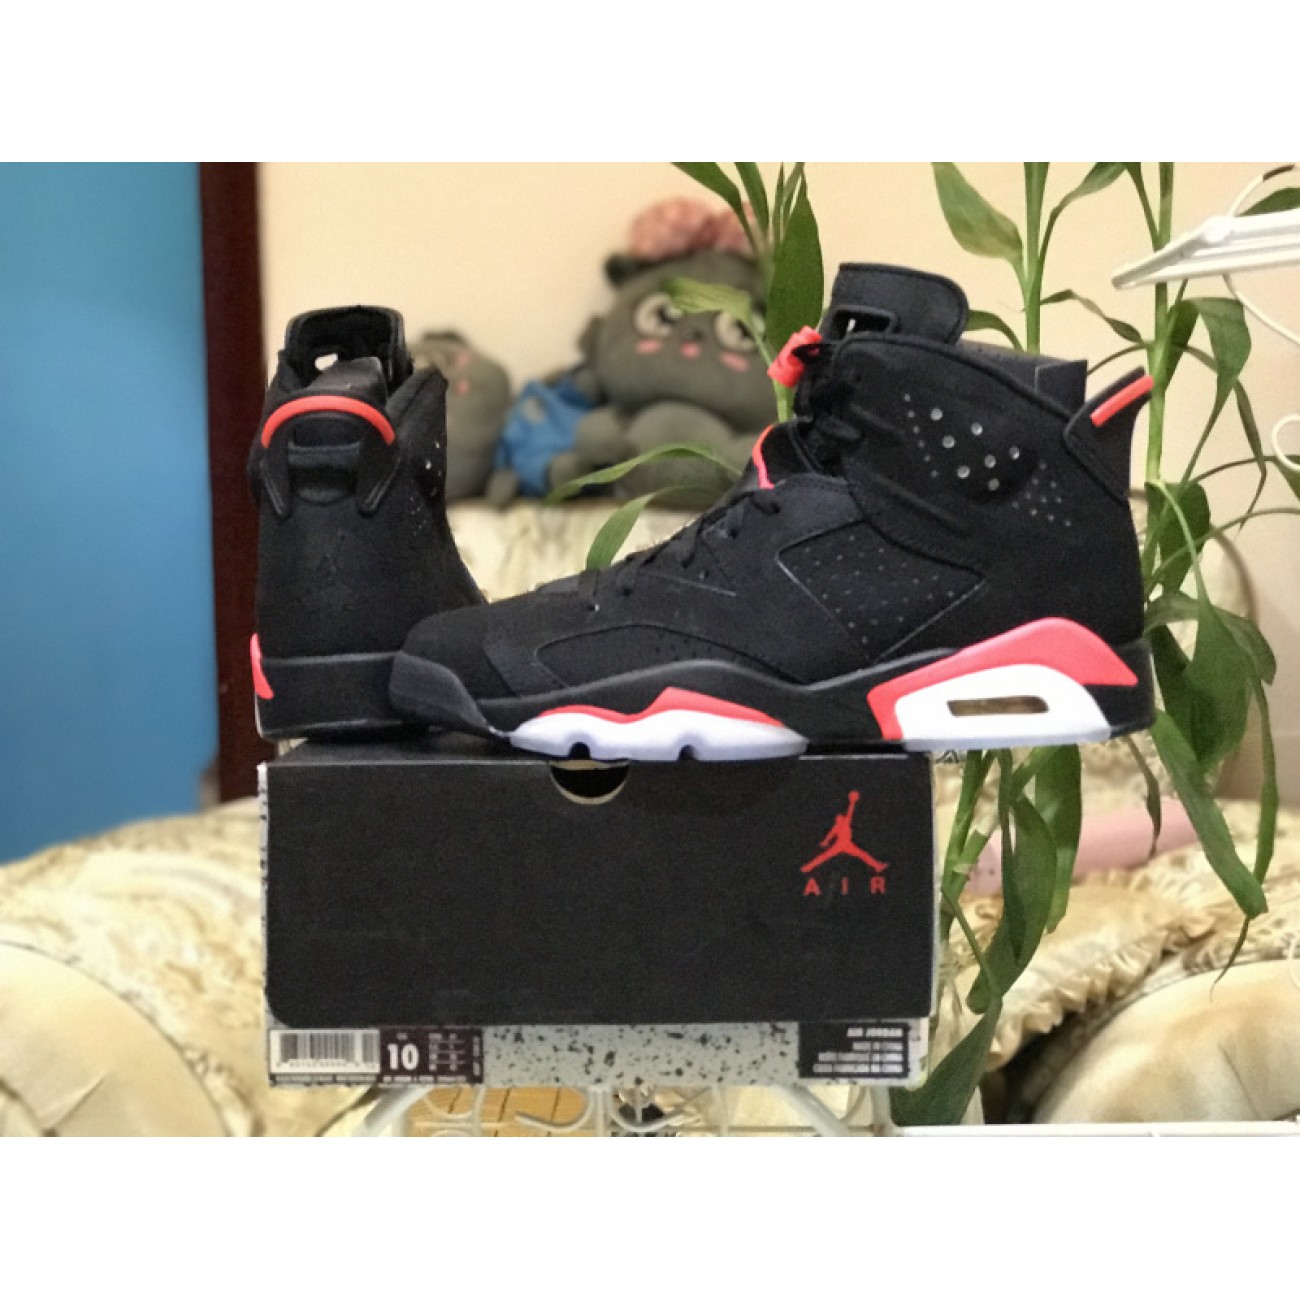 Air Jordan 6 Black Infrared 624041-006